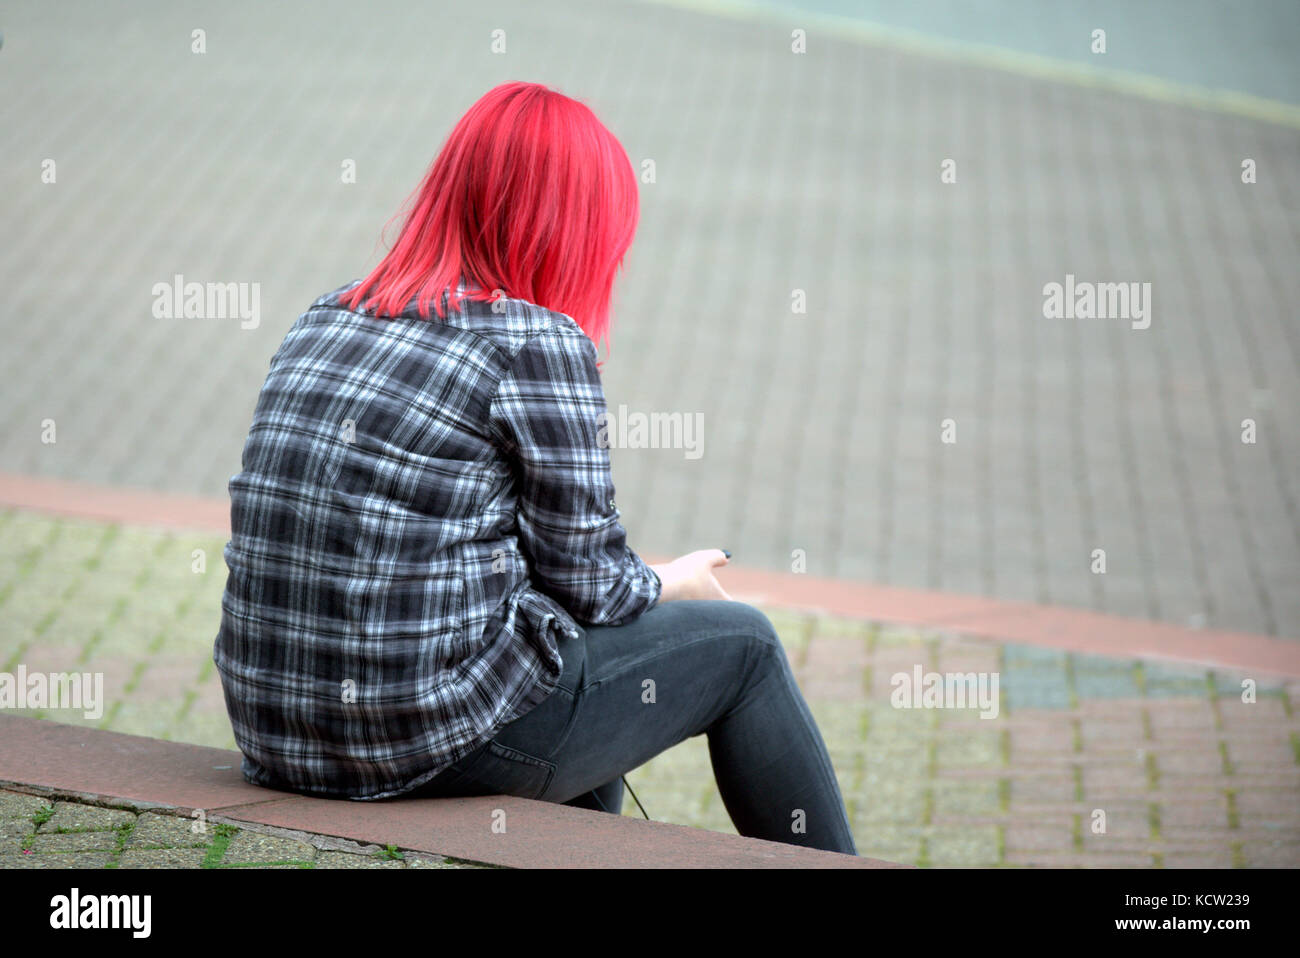 Tinti Capelli rossi ragazza adolescente da sola seduta sui gradini utilizzando smart telefono cellulare Foto Stock